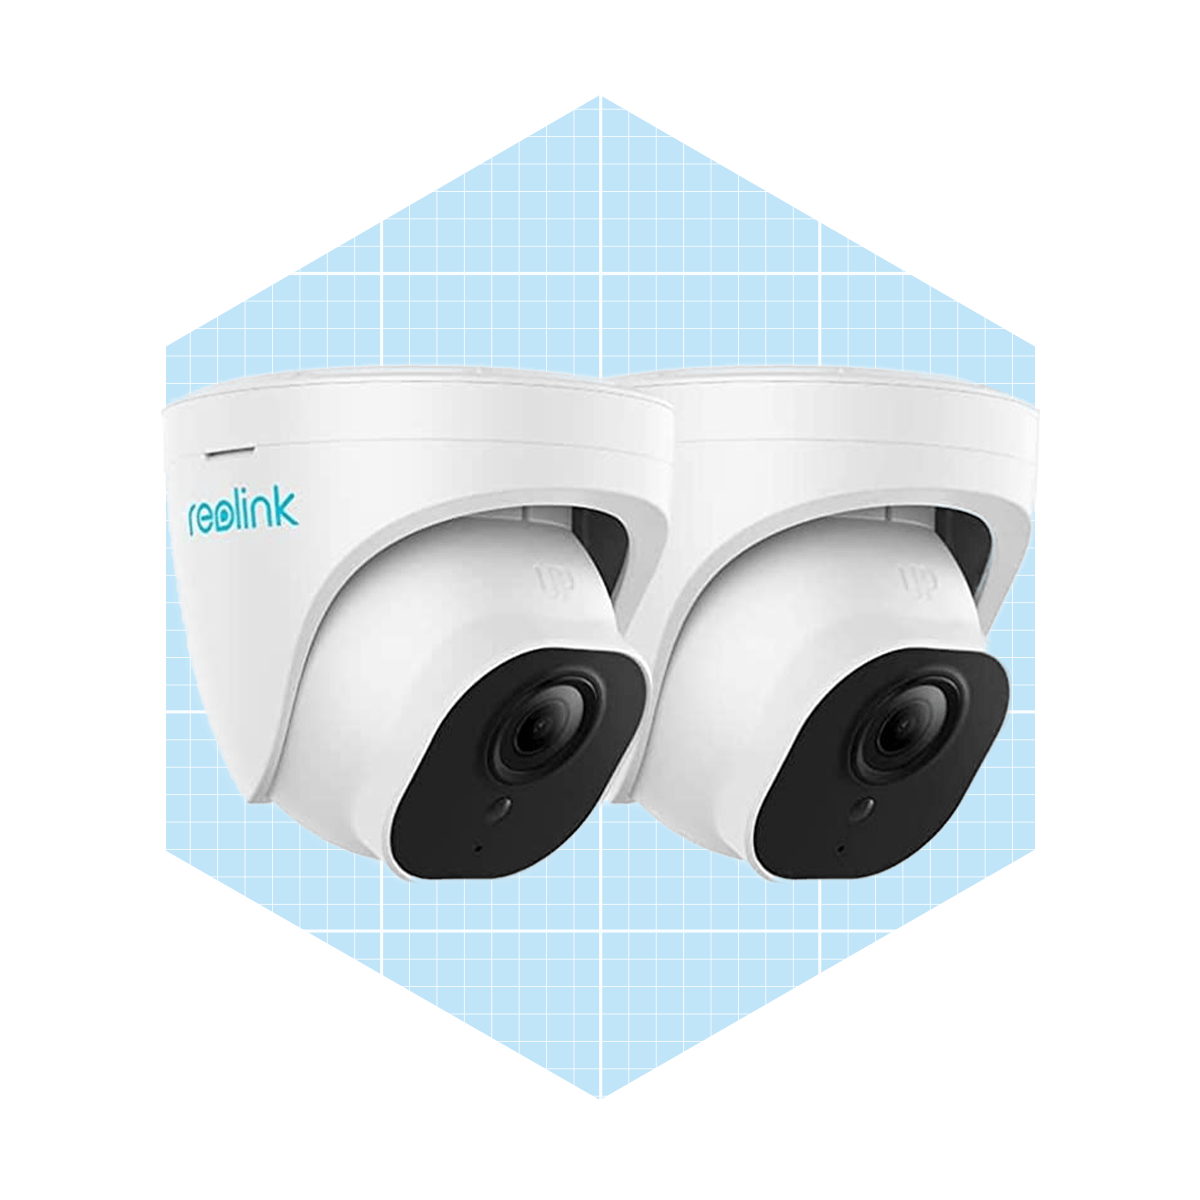 Reolink Smart Home Security Camera System Ecomm Via Amazon.com